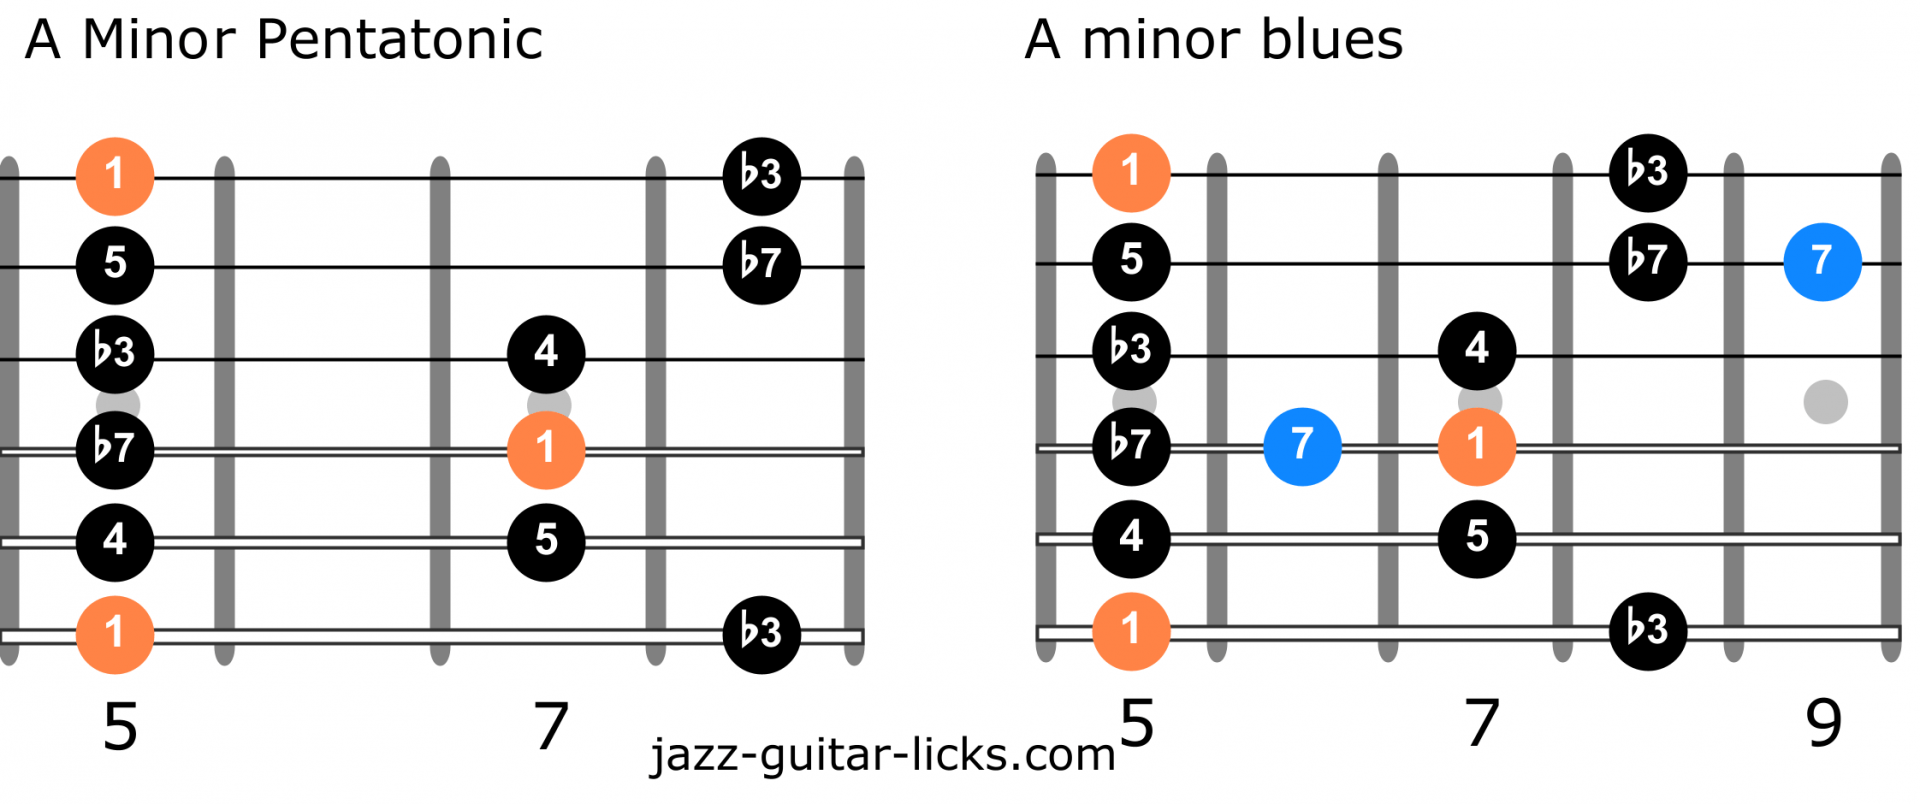 Minor pentatonic scale vs minor blues